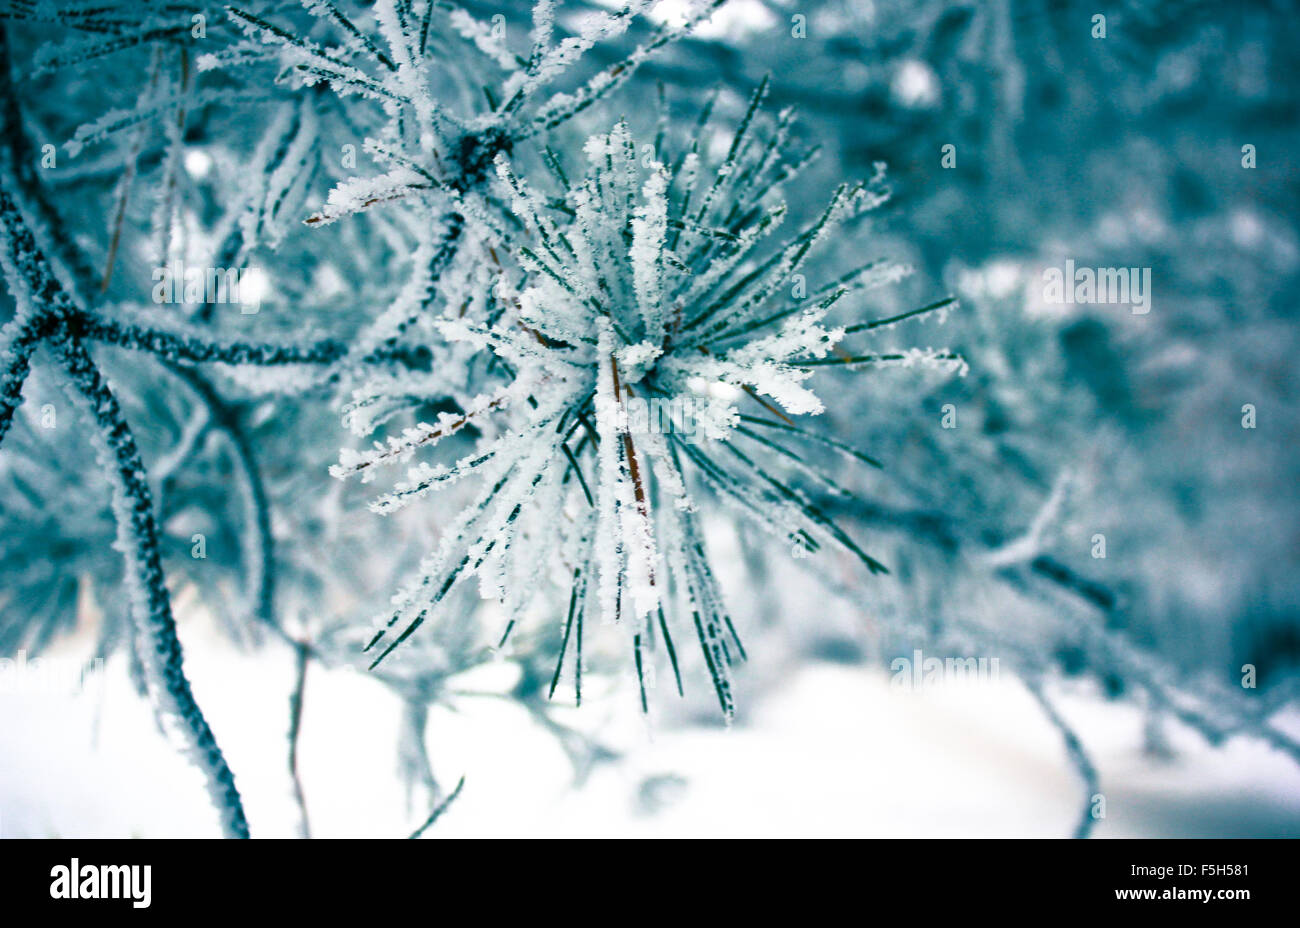 Les feuilles d'hiver dans le gel. Abstract background Banque D'Images